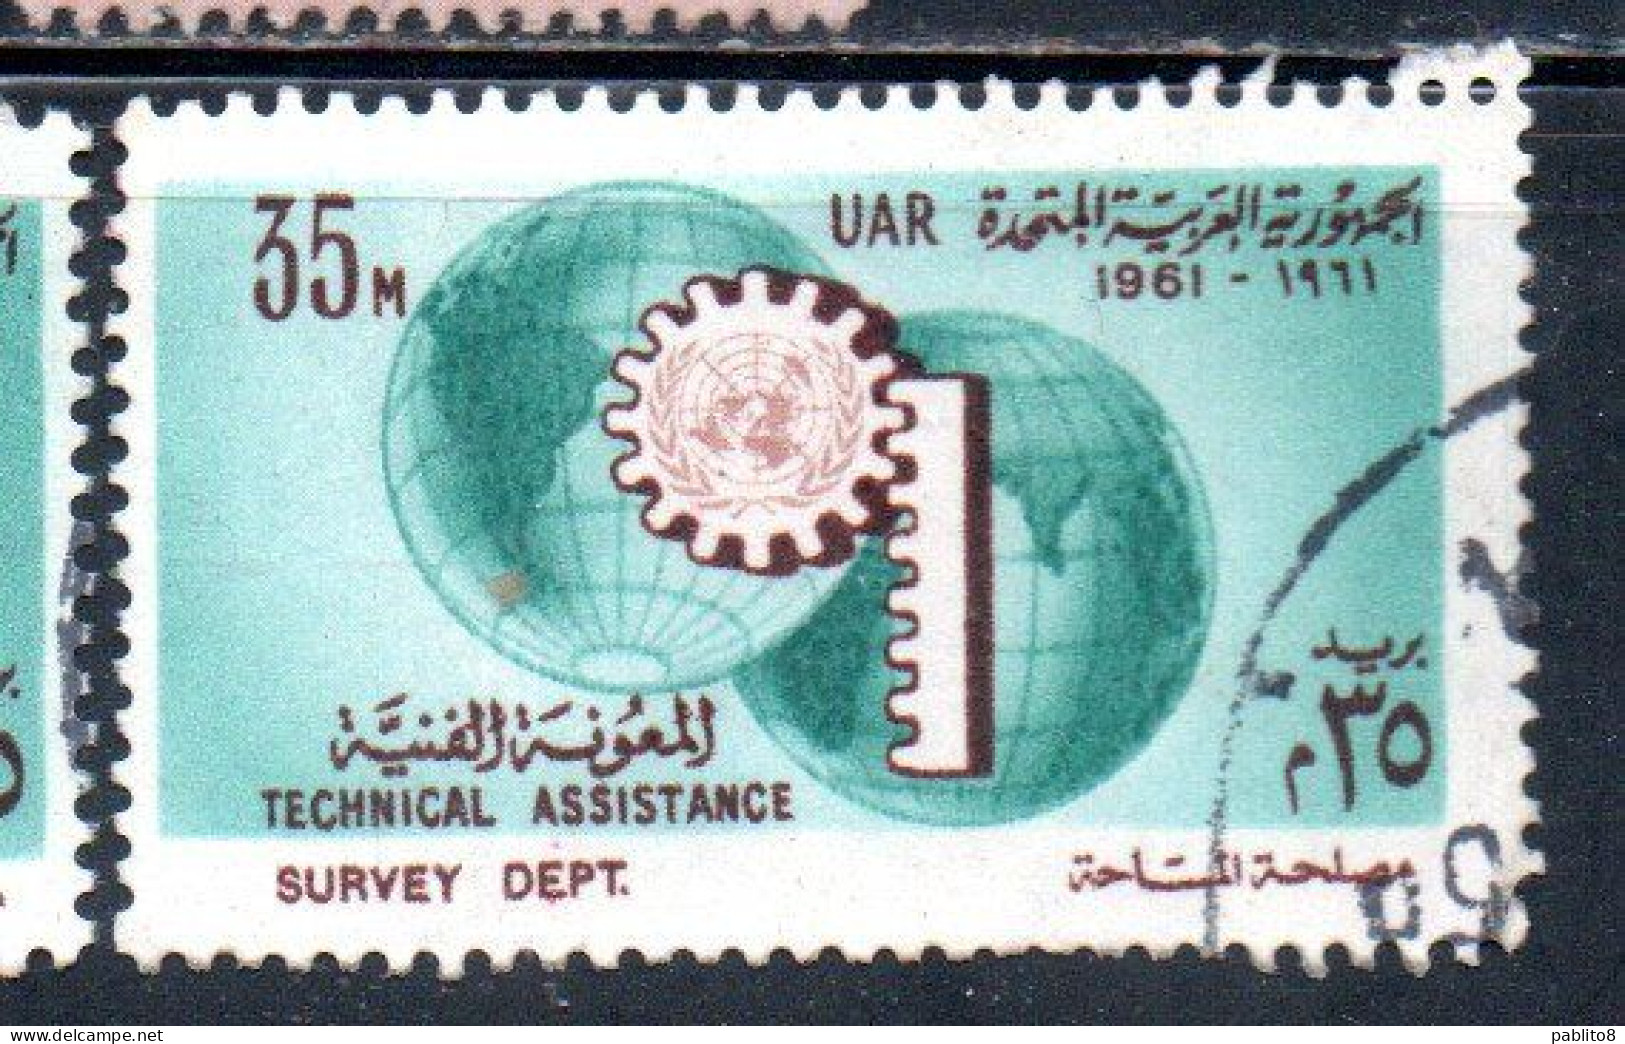 UAR EGYPT EGITTO 1961 UN ONU TECHNICAL ASSISTENCE PROGRAM AND 16th ANNIVERSARY 35m USED USATO OBLITERE' - Usados